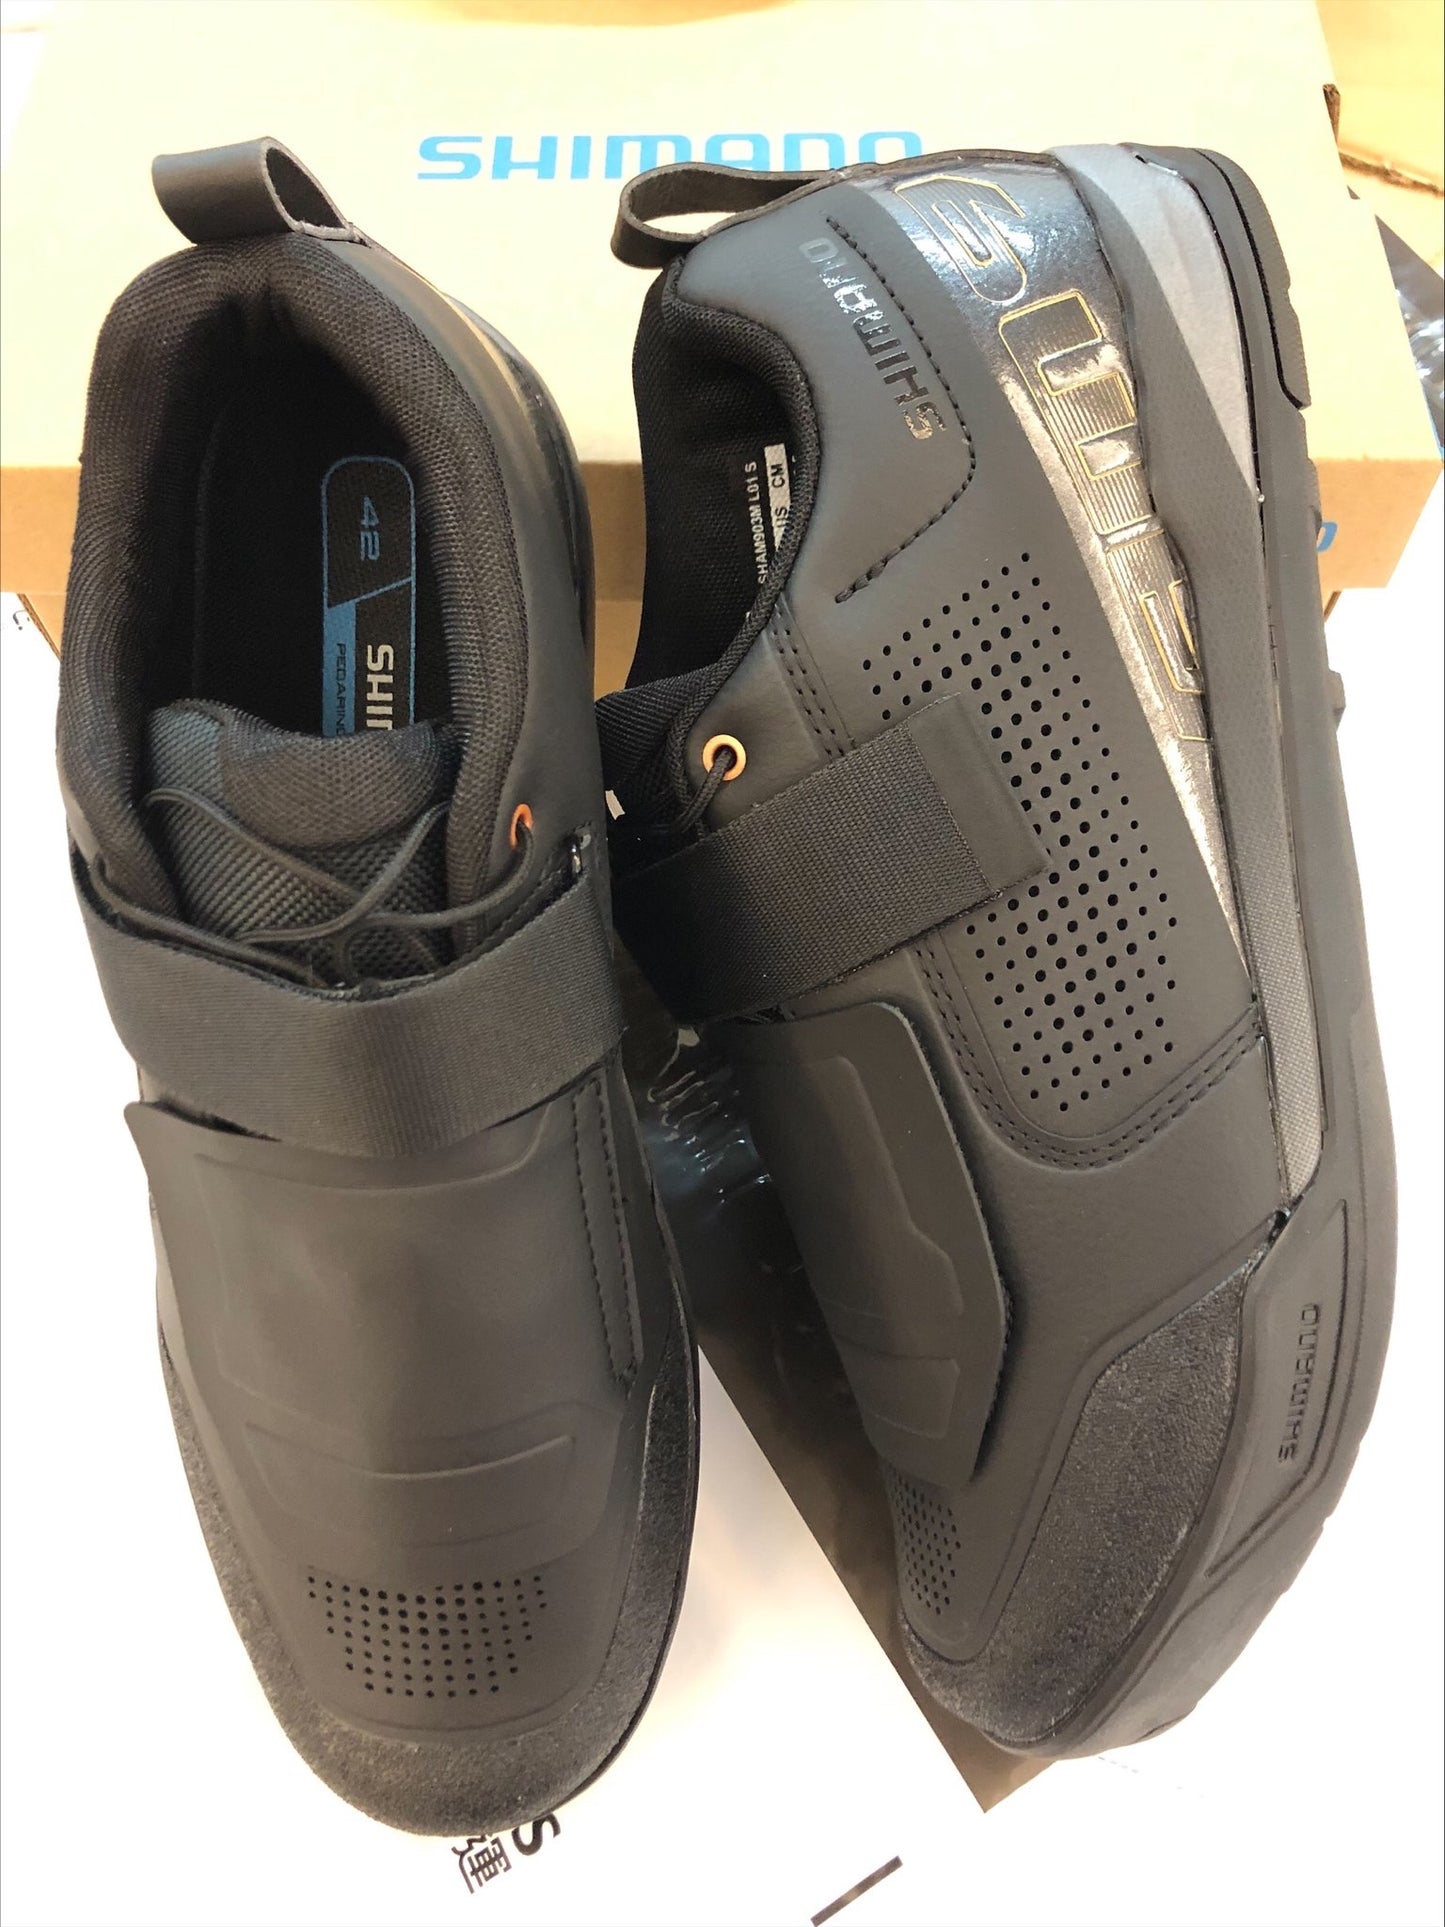 SHIMANO SH-AM903 山地鞋-黑色 / SHIMANO SH-AM903 MTB SHOES-BLACK